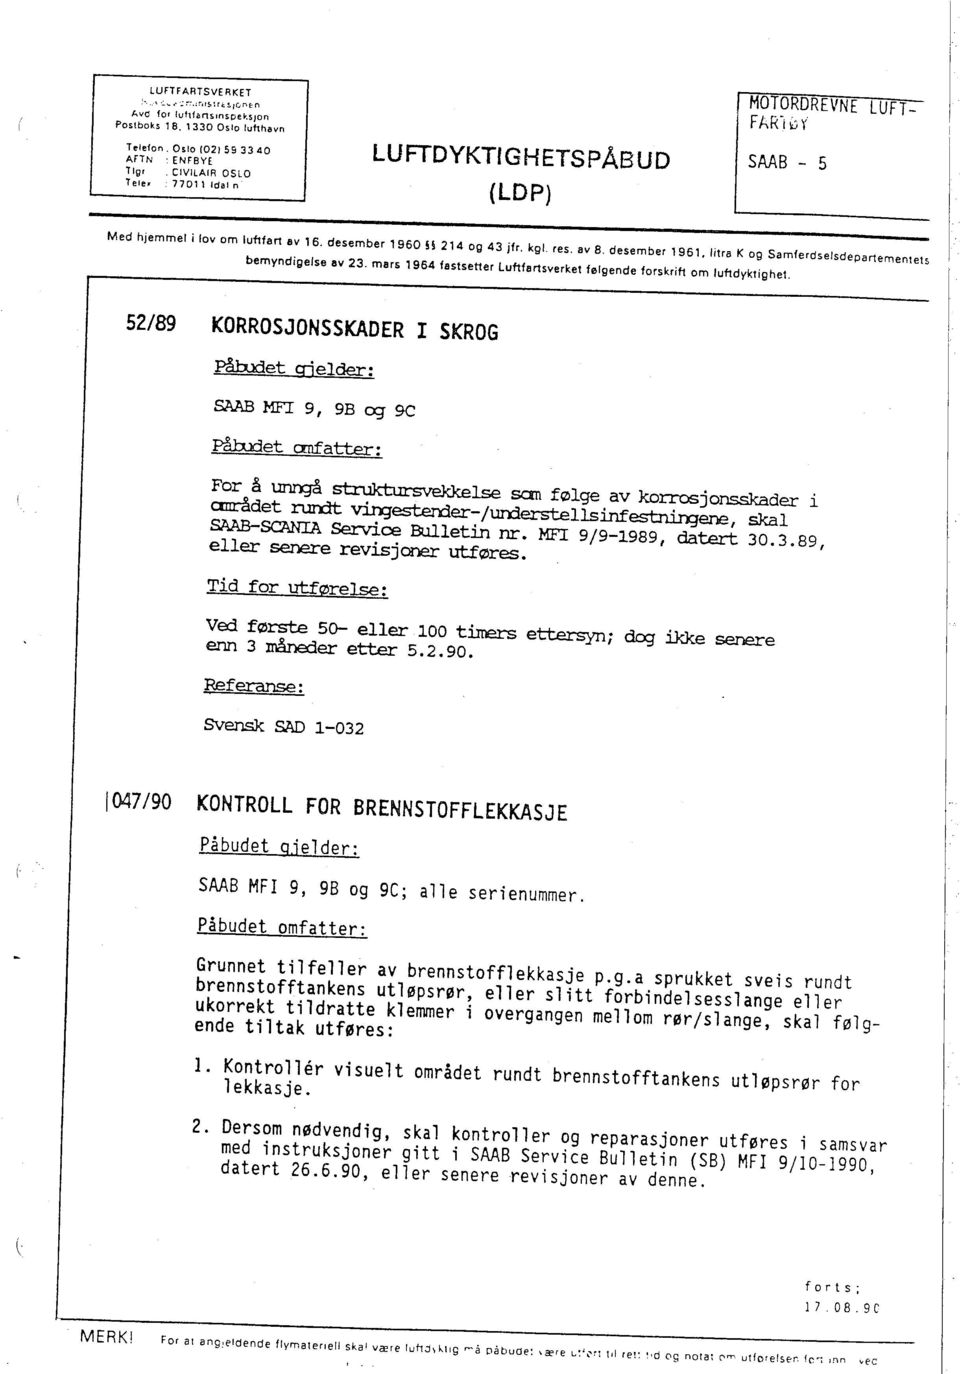 litra K og Samfe,dsetsdepanementets bemyndigelse av 23. mars i 964 fastsetter luftfansverket følgende forskrift om luftdyktighet.